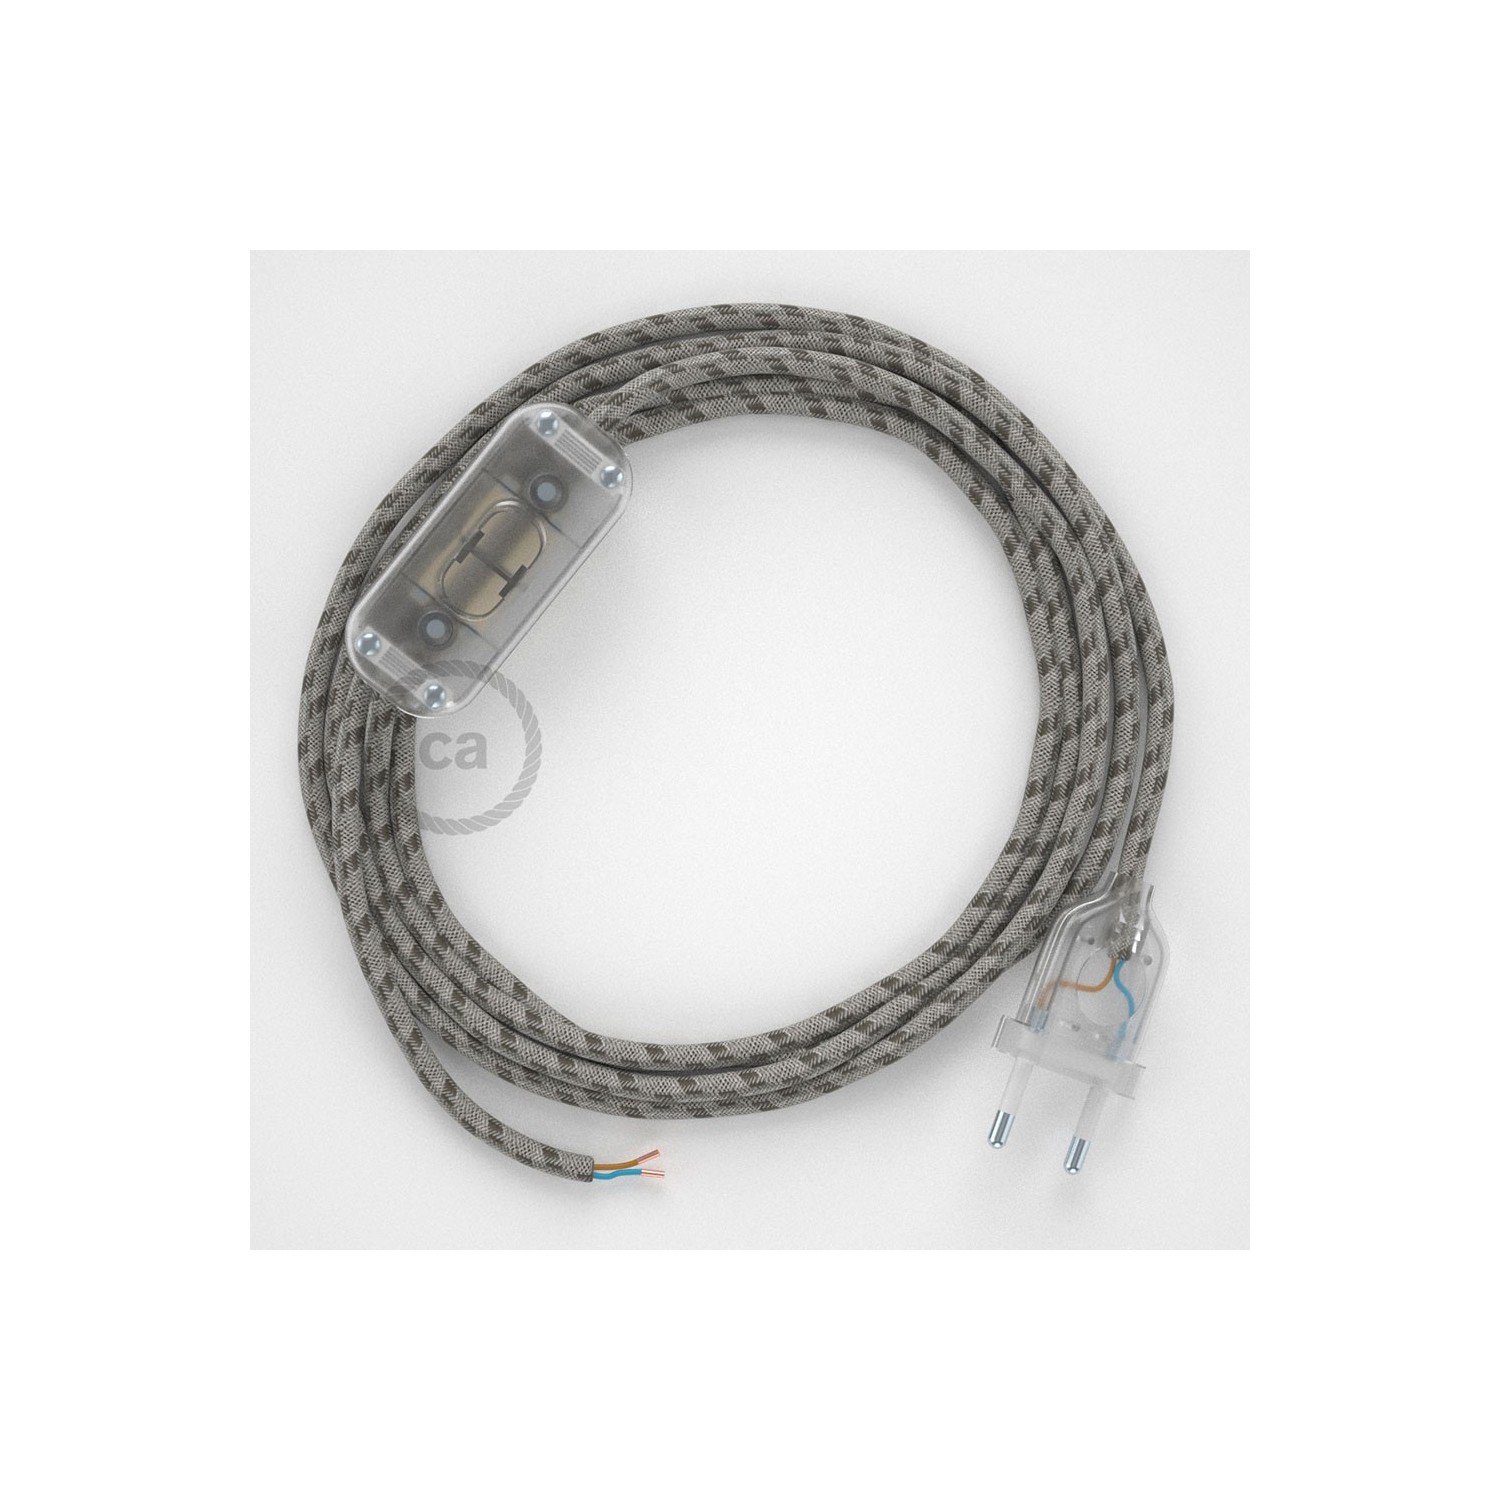 Cableado para lámpara, cable RD53 Algodón y Lino Stripes Corteza 1,8m. Elige tu el color de la clavija y del interruptor!